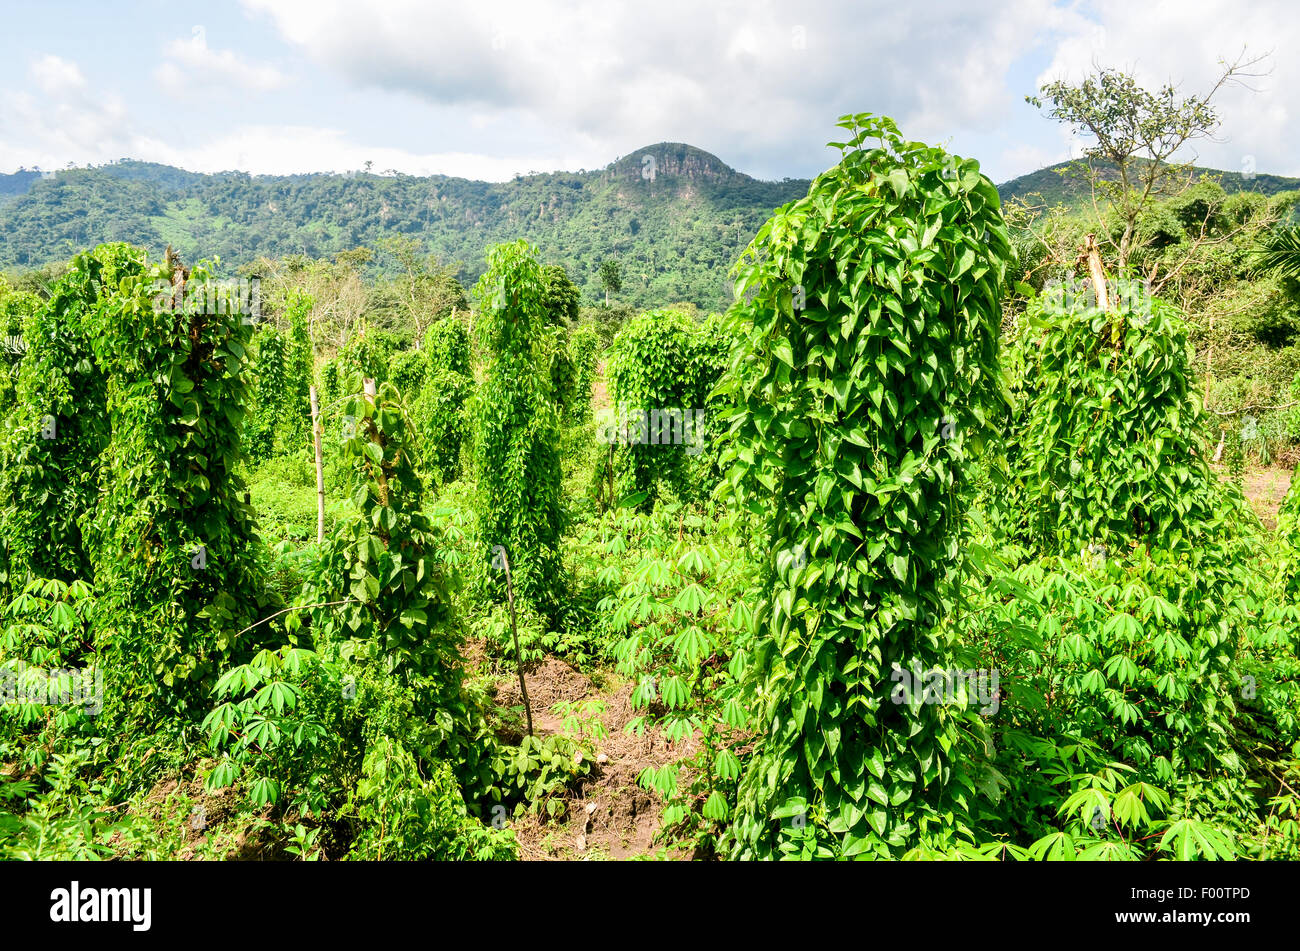 Bush and plantations on the Volta region of Ghana Stock Photo